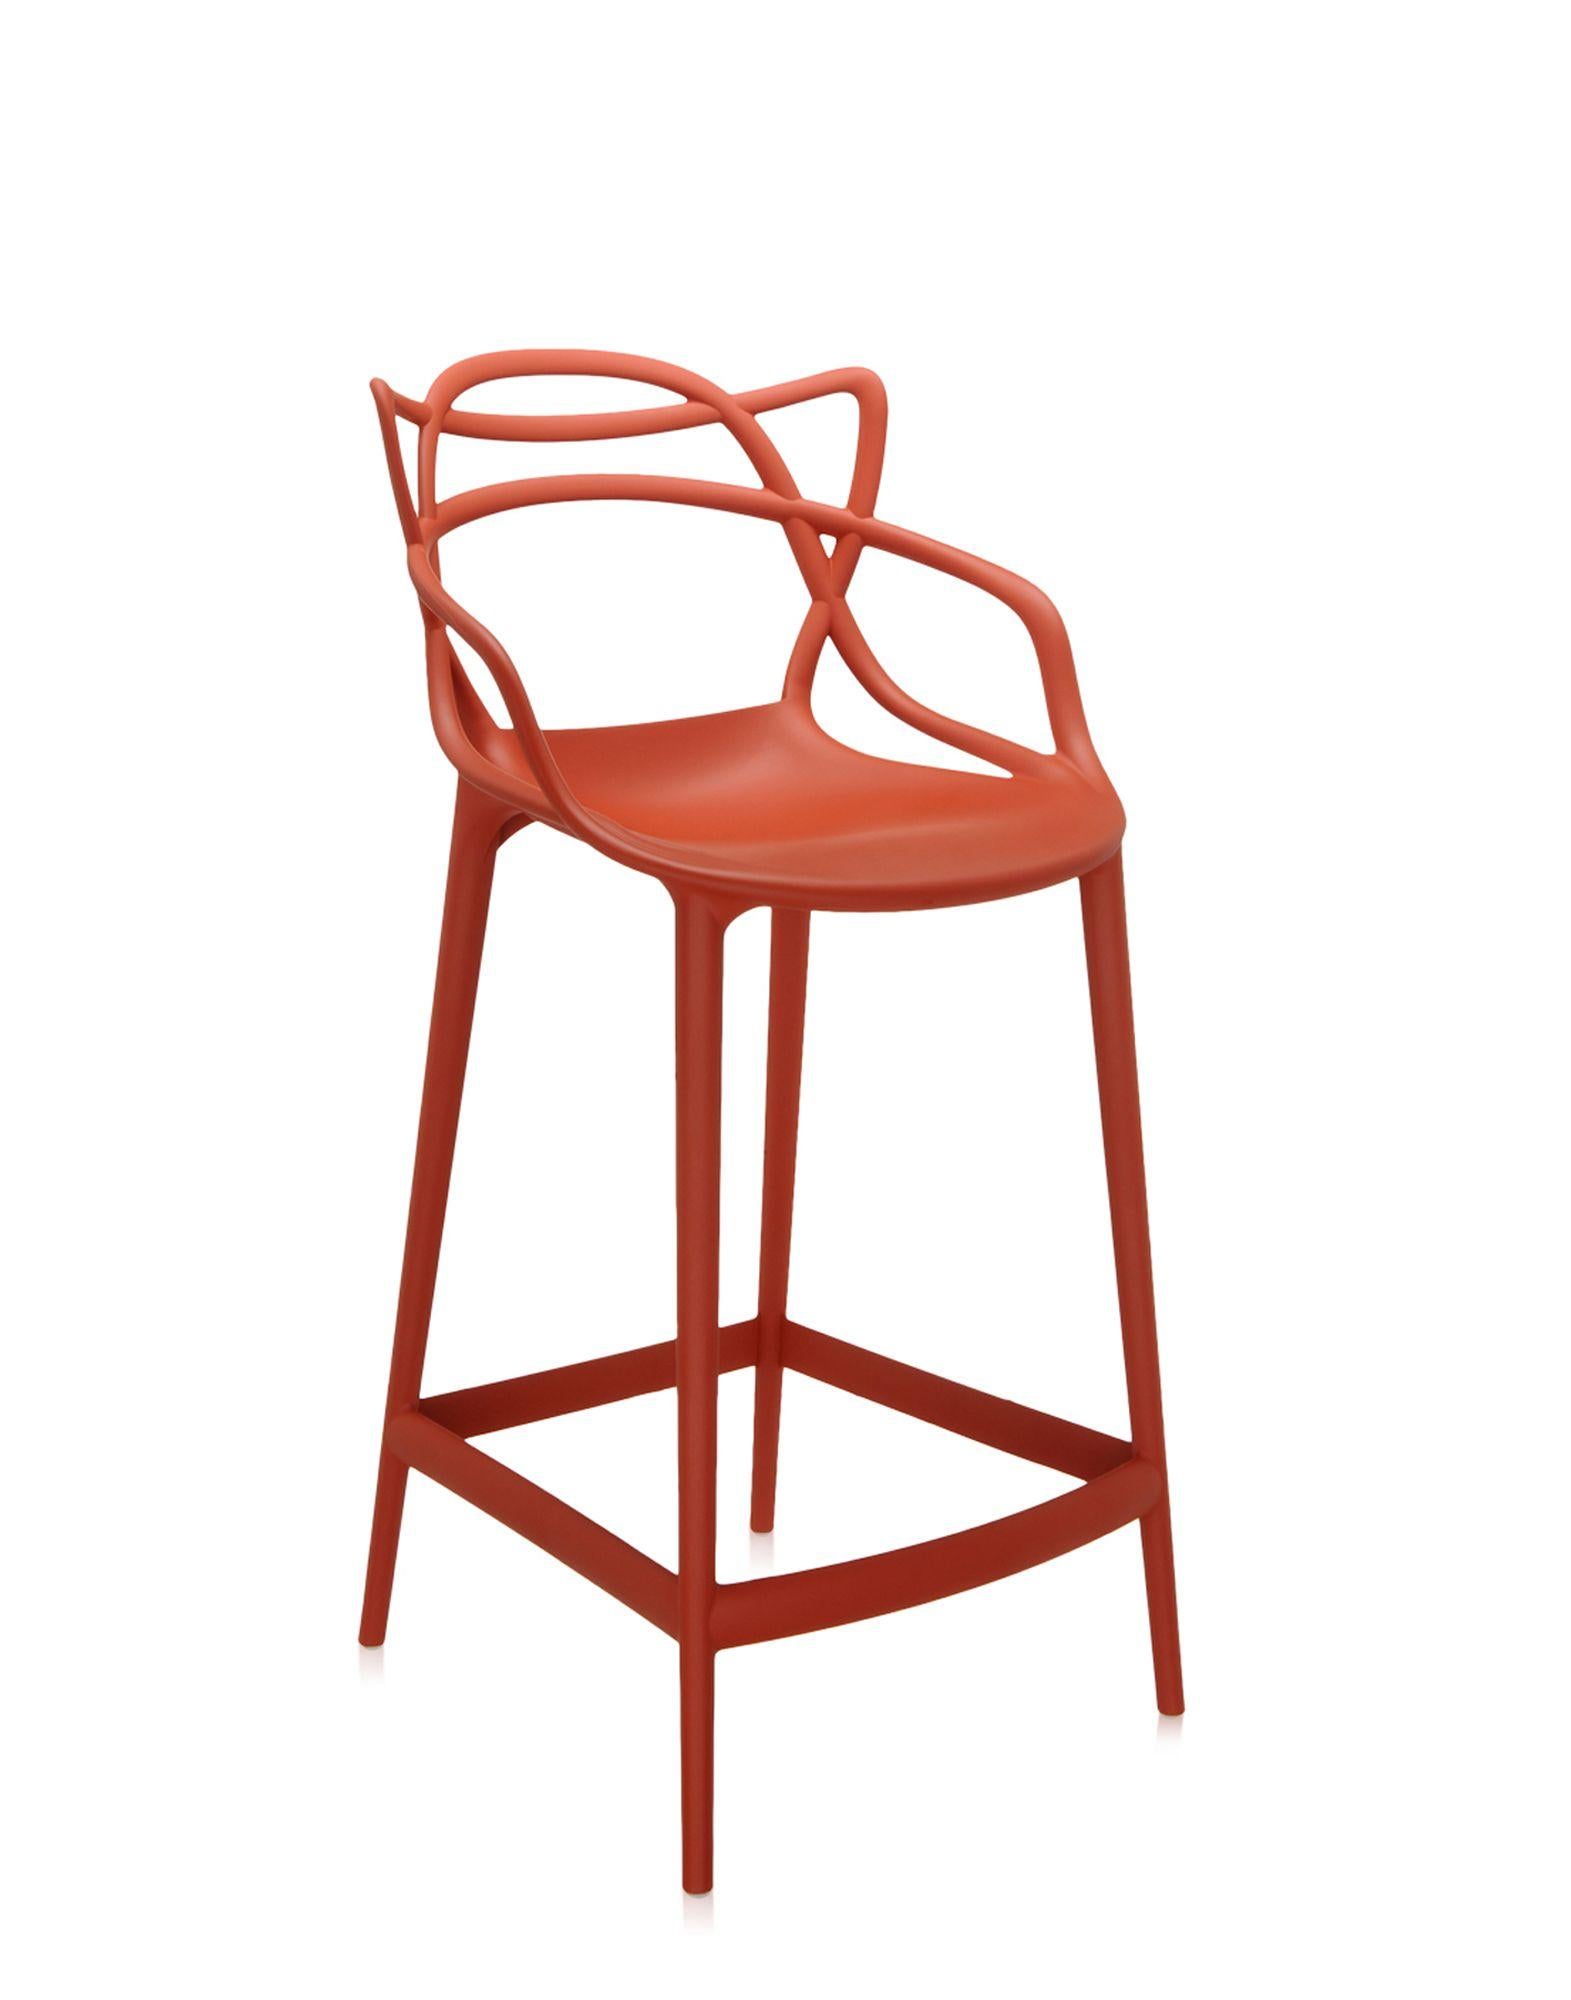 Kartell propose également une version tabouret de la chaise Masters, lauréate du Good Design Award 2010 et du Red Dot Award 2013 et best-seller mondial. Les pieds sont allongés et l'assise est rétrécie, mais l'aspect graphique incomparable du cadre,